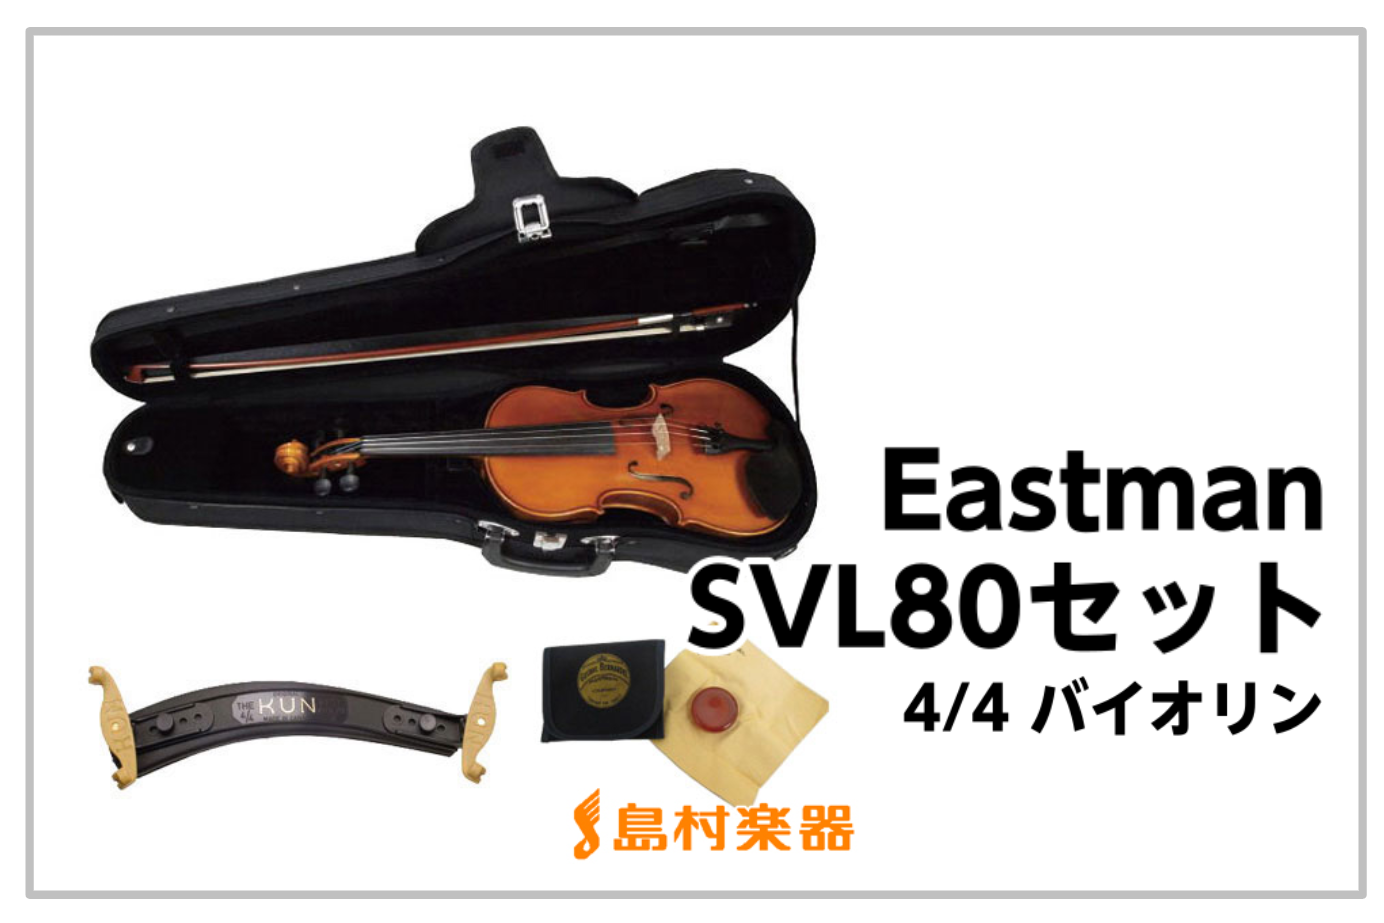 EASTMAN SVL80セット 4/4 バイオリン  / これから始める方におススメ!!